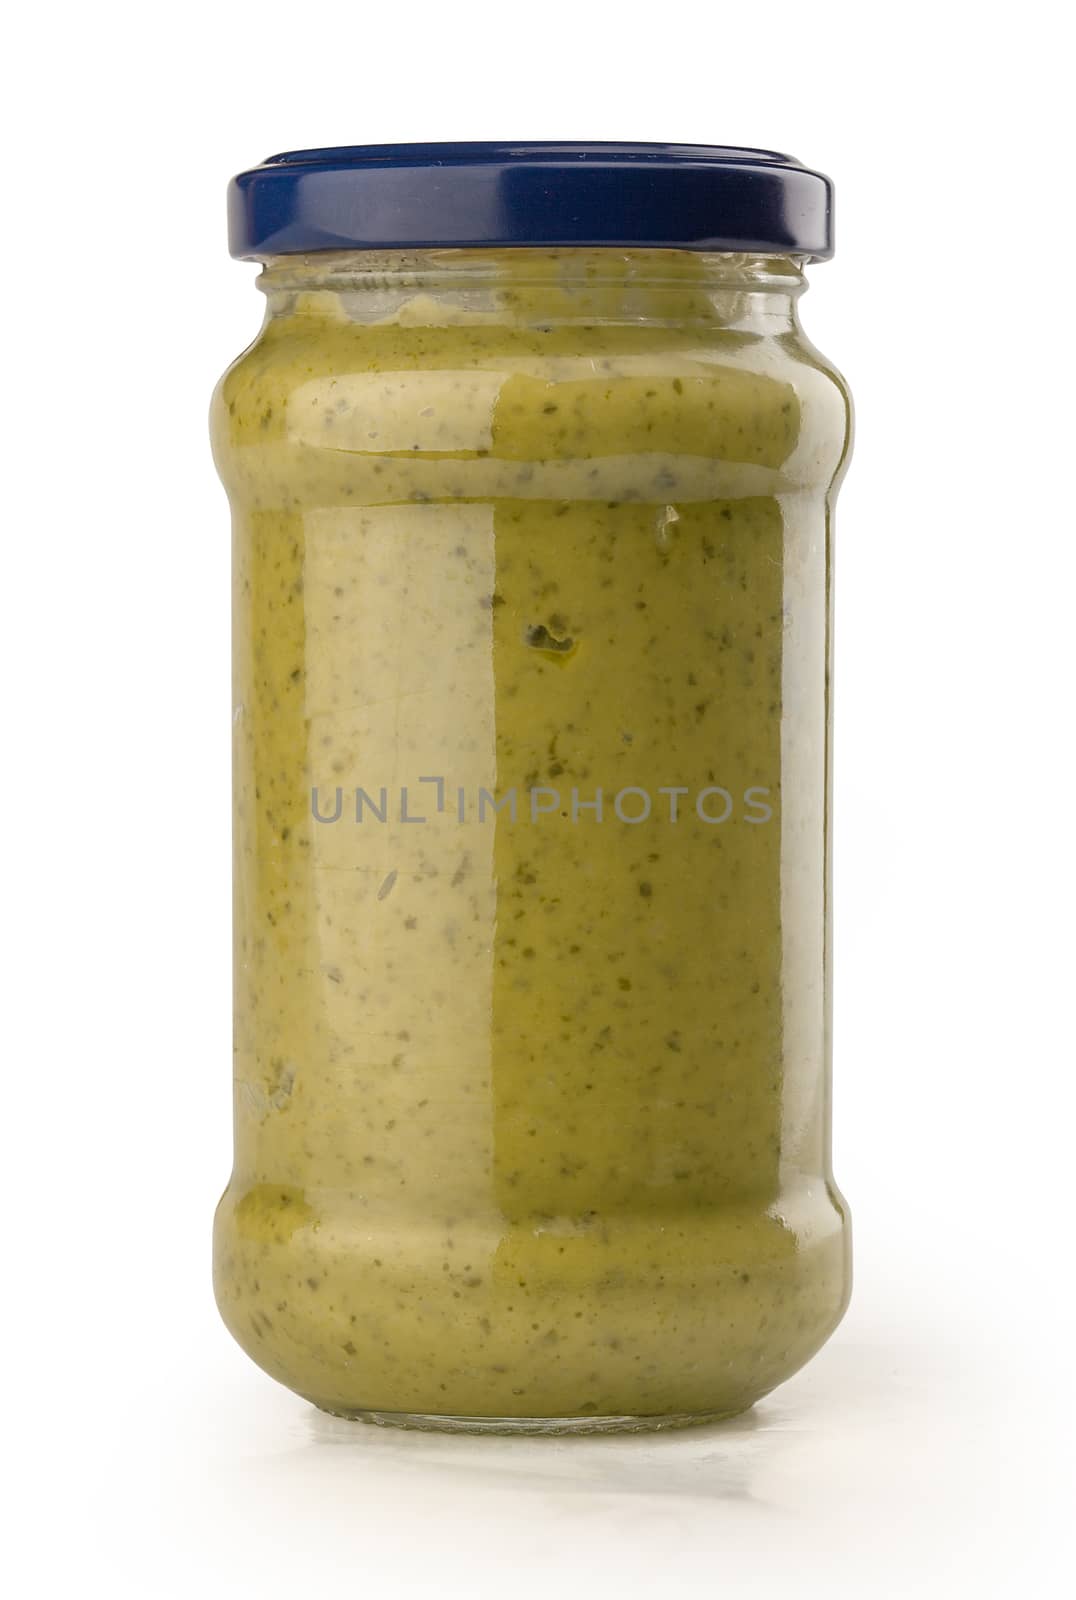 Pesto sauce in the glass jar by Angorius